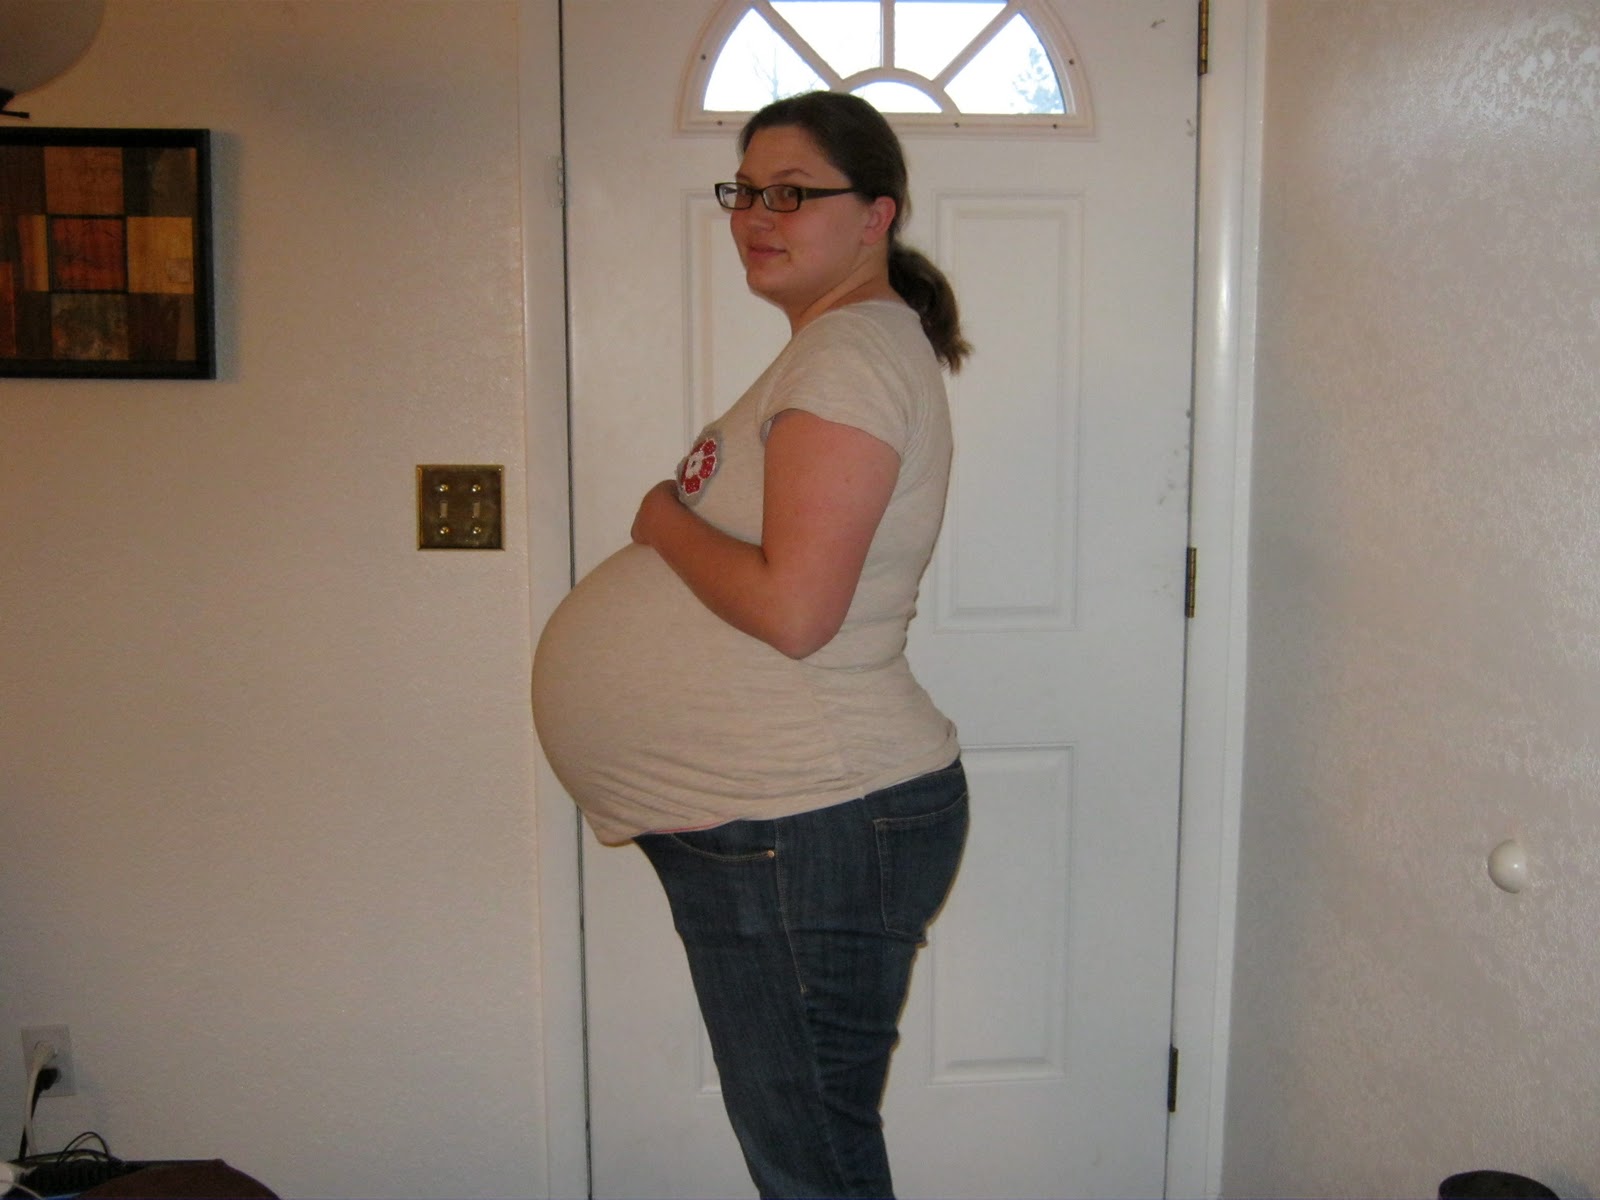 35 1 неделя беременности